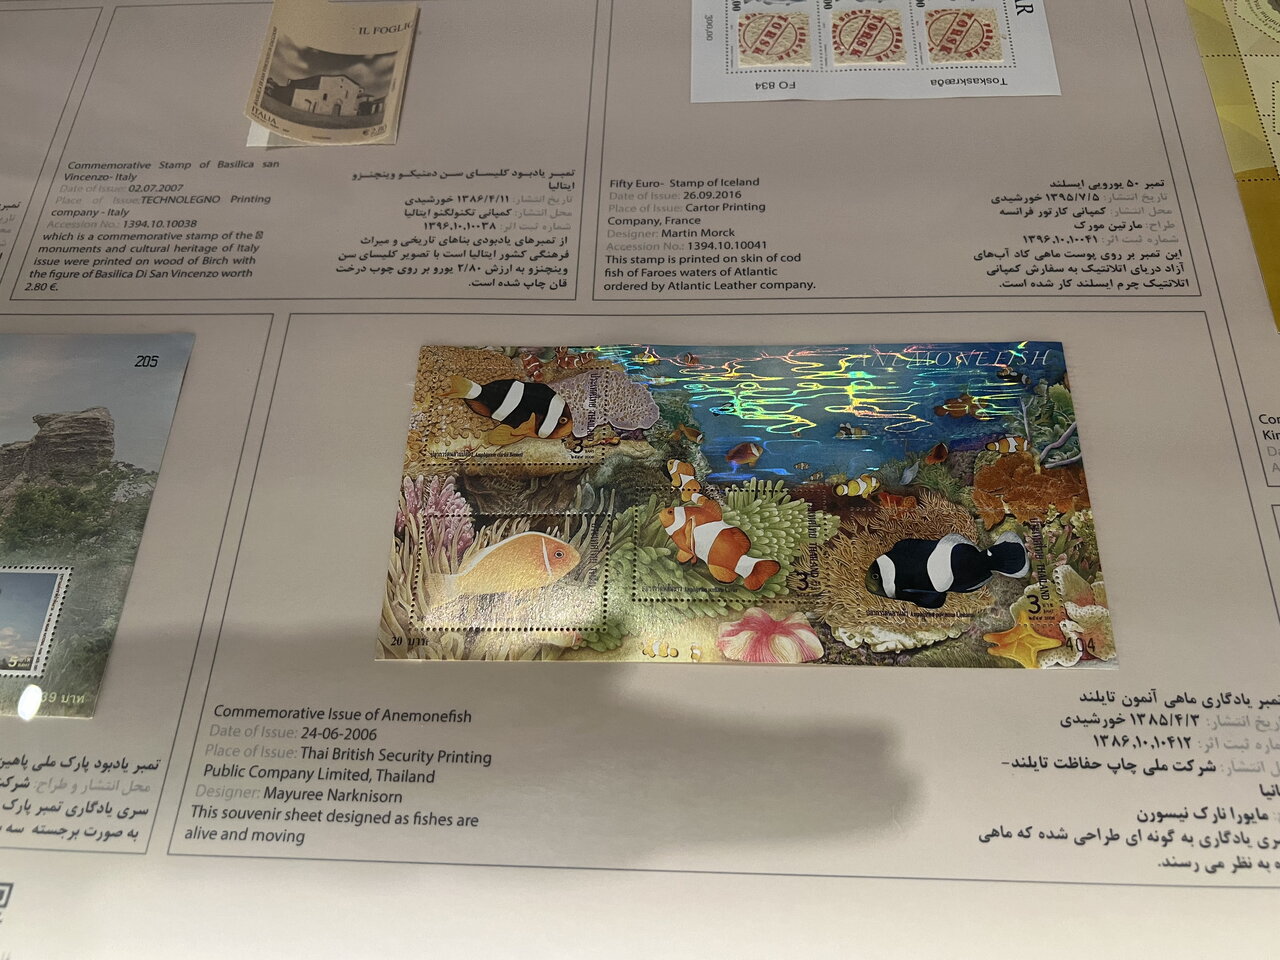 دنیای نوستالژیک و قیمتی تمبرهای موزه ملک | از تمبرهای سورشارژ تا تمبرهای خطاکار!